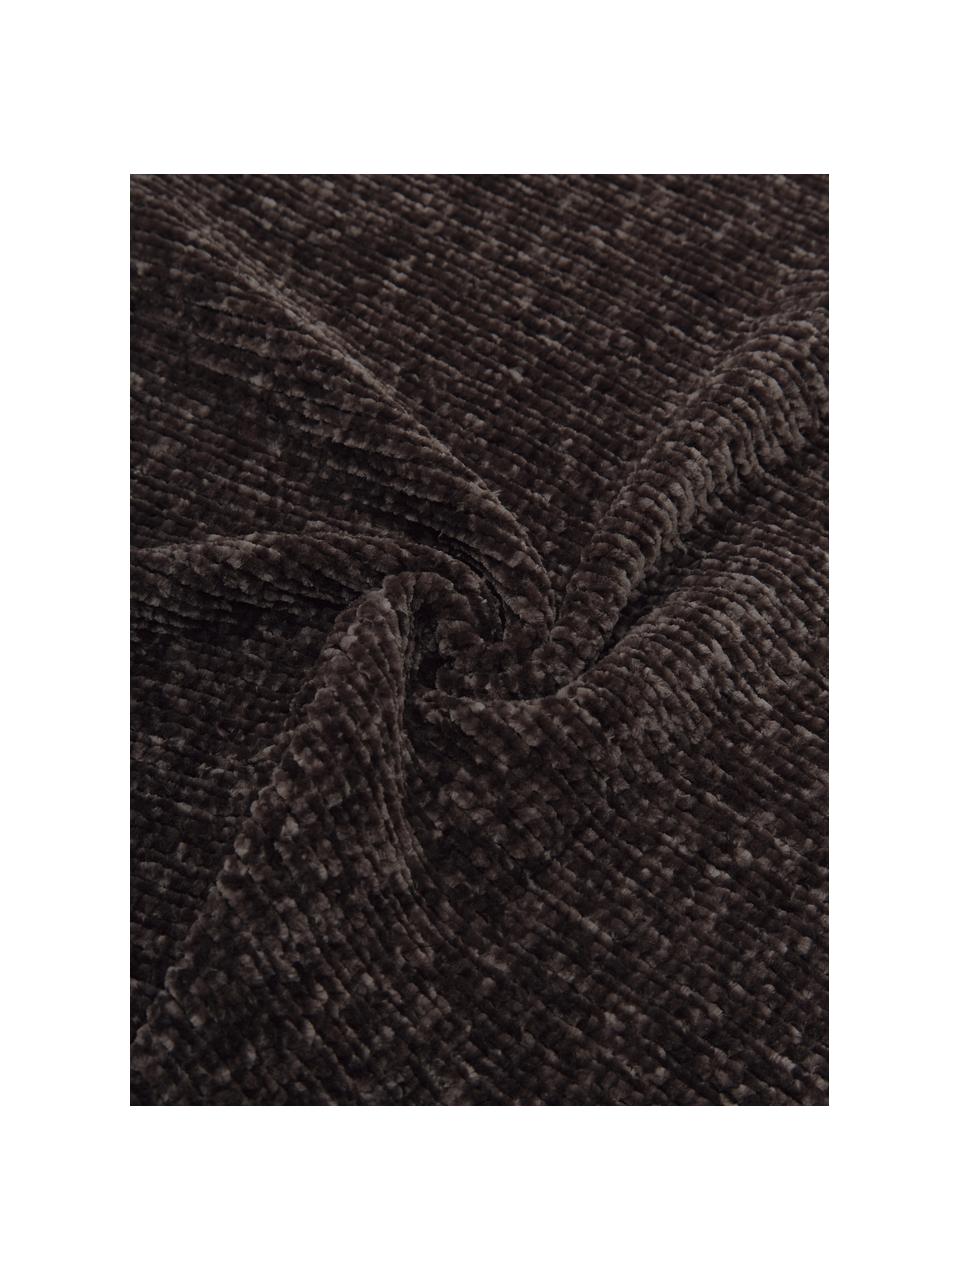 Coperta morbida in ciniglia color grigio scuro Beckett, 100% poliestere, Grigio scuro, Larg. 130 x Lung. 170 cm